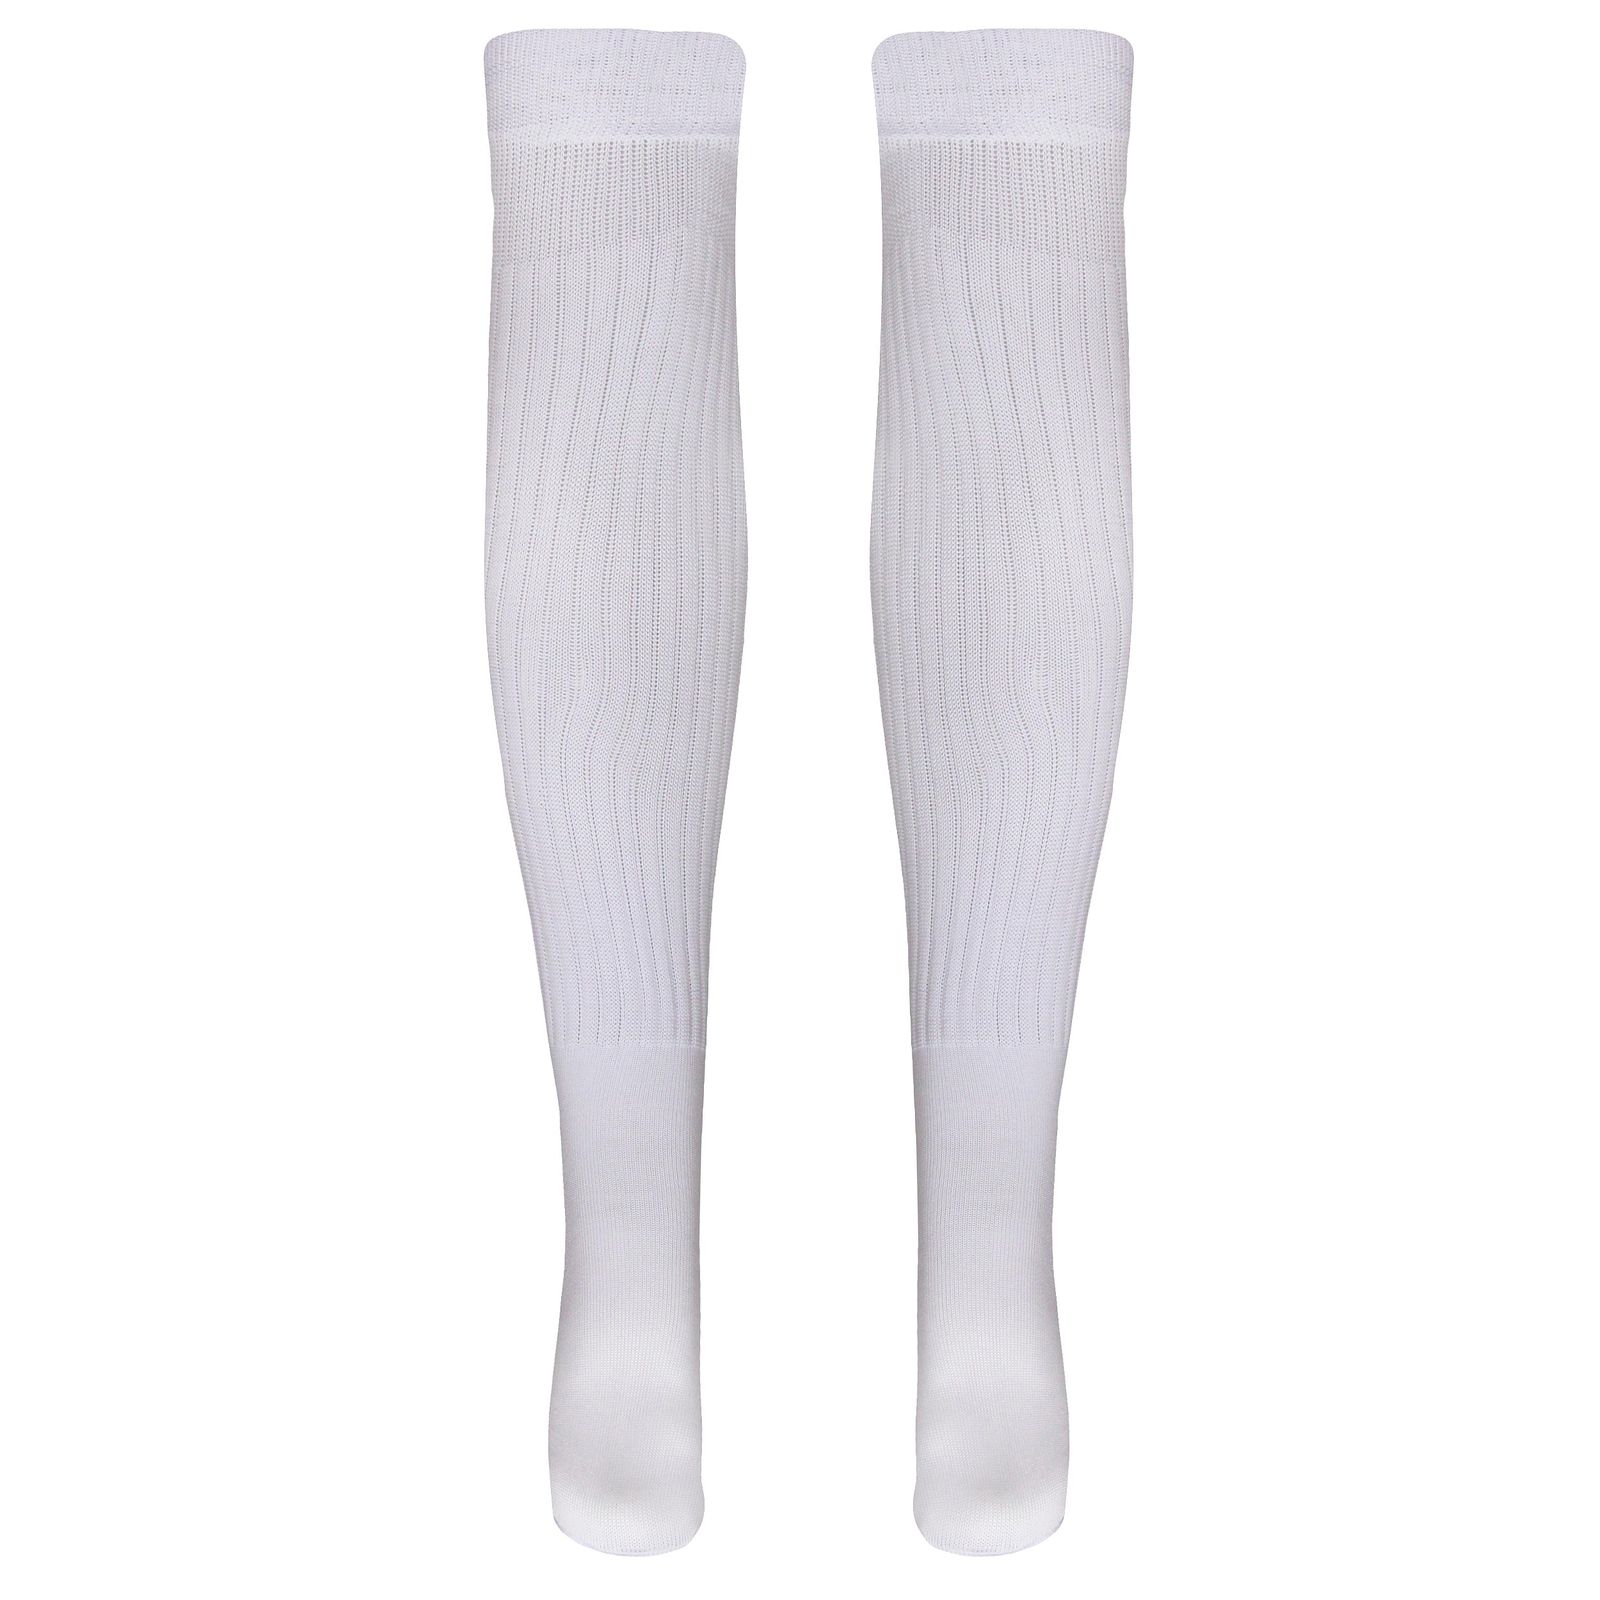 جوراب ساق بلند ورزشی  زنانه ماییلدا مدل 4185 رنگ سفید